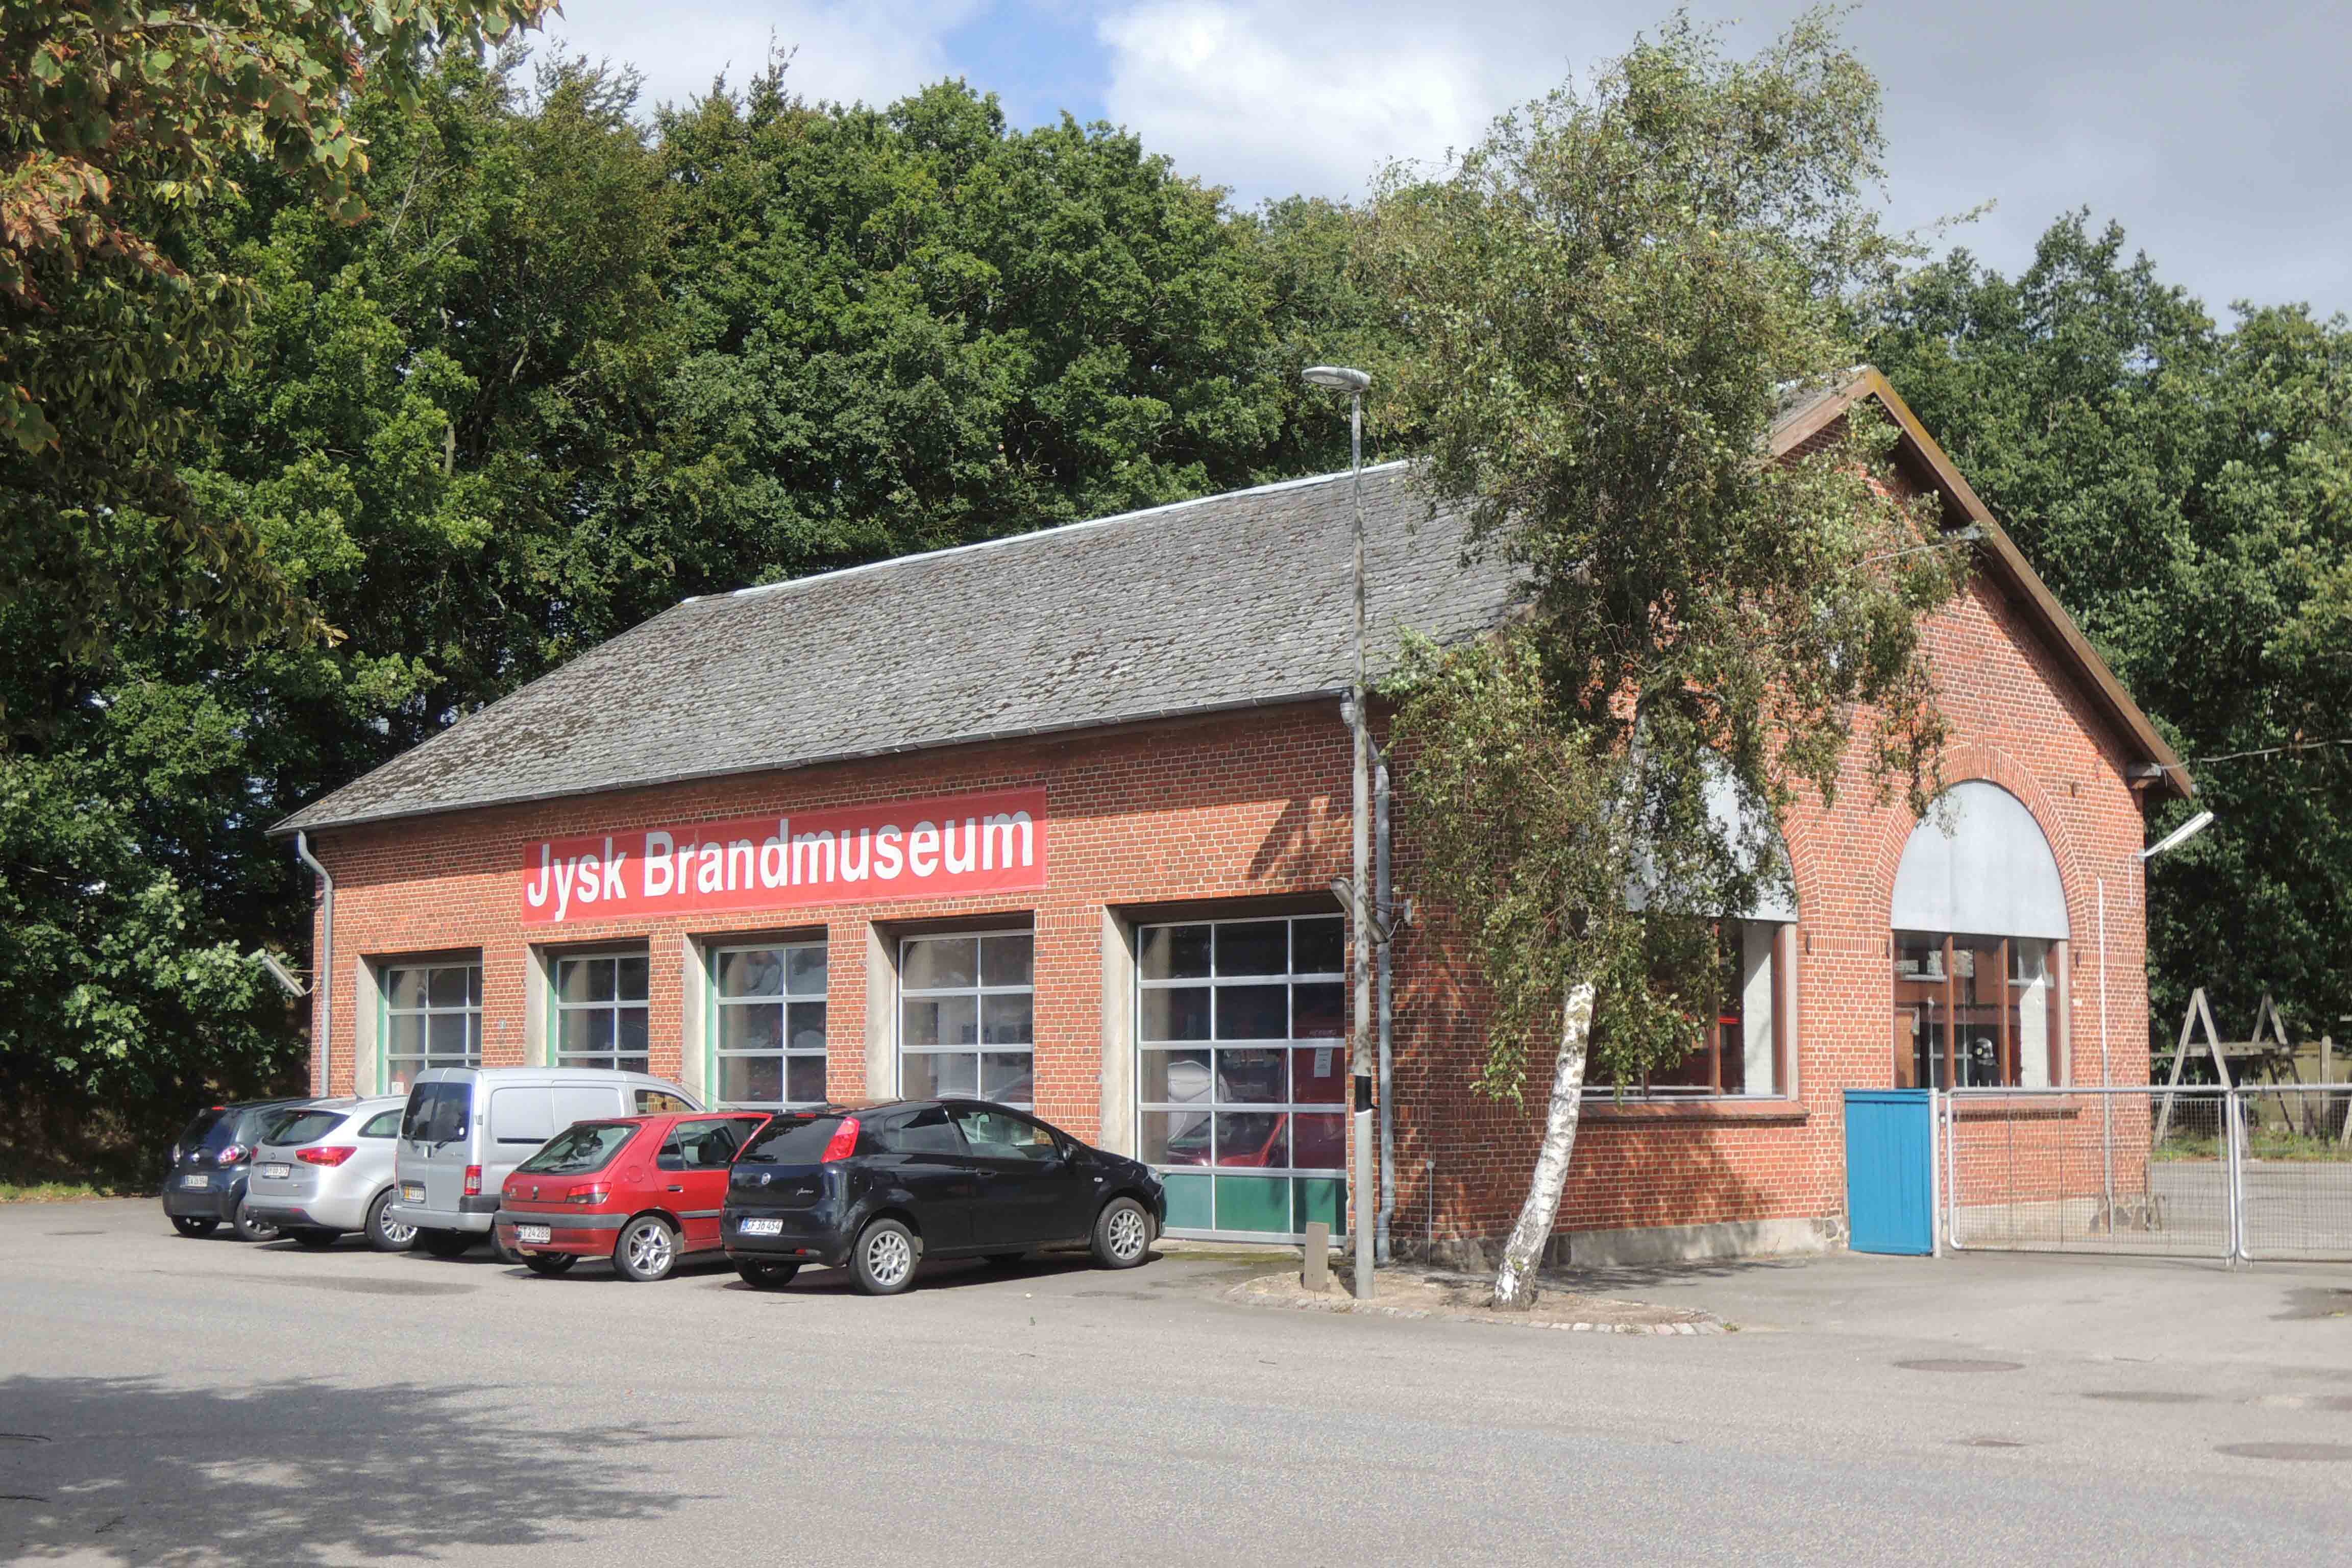 SKRJ-Jysk-Brandmuseum-garagen-ex-SKRJ remise  aug 2014